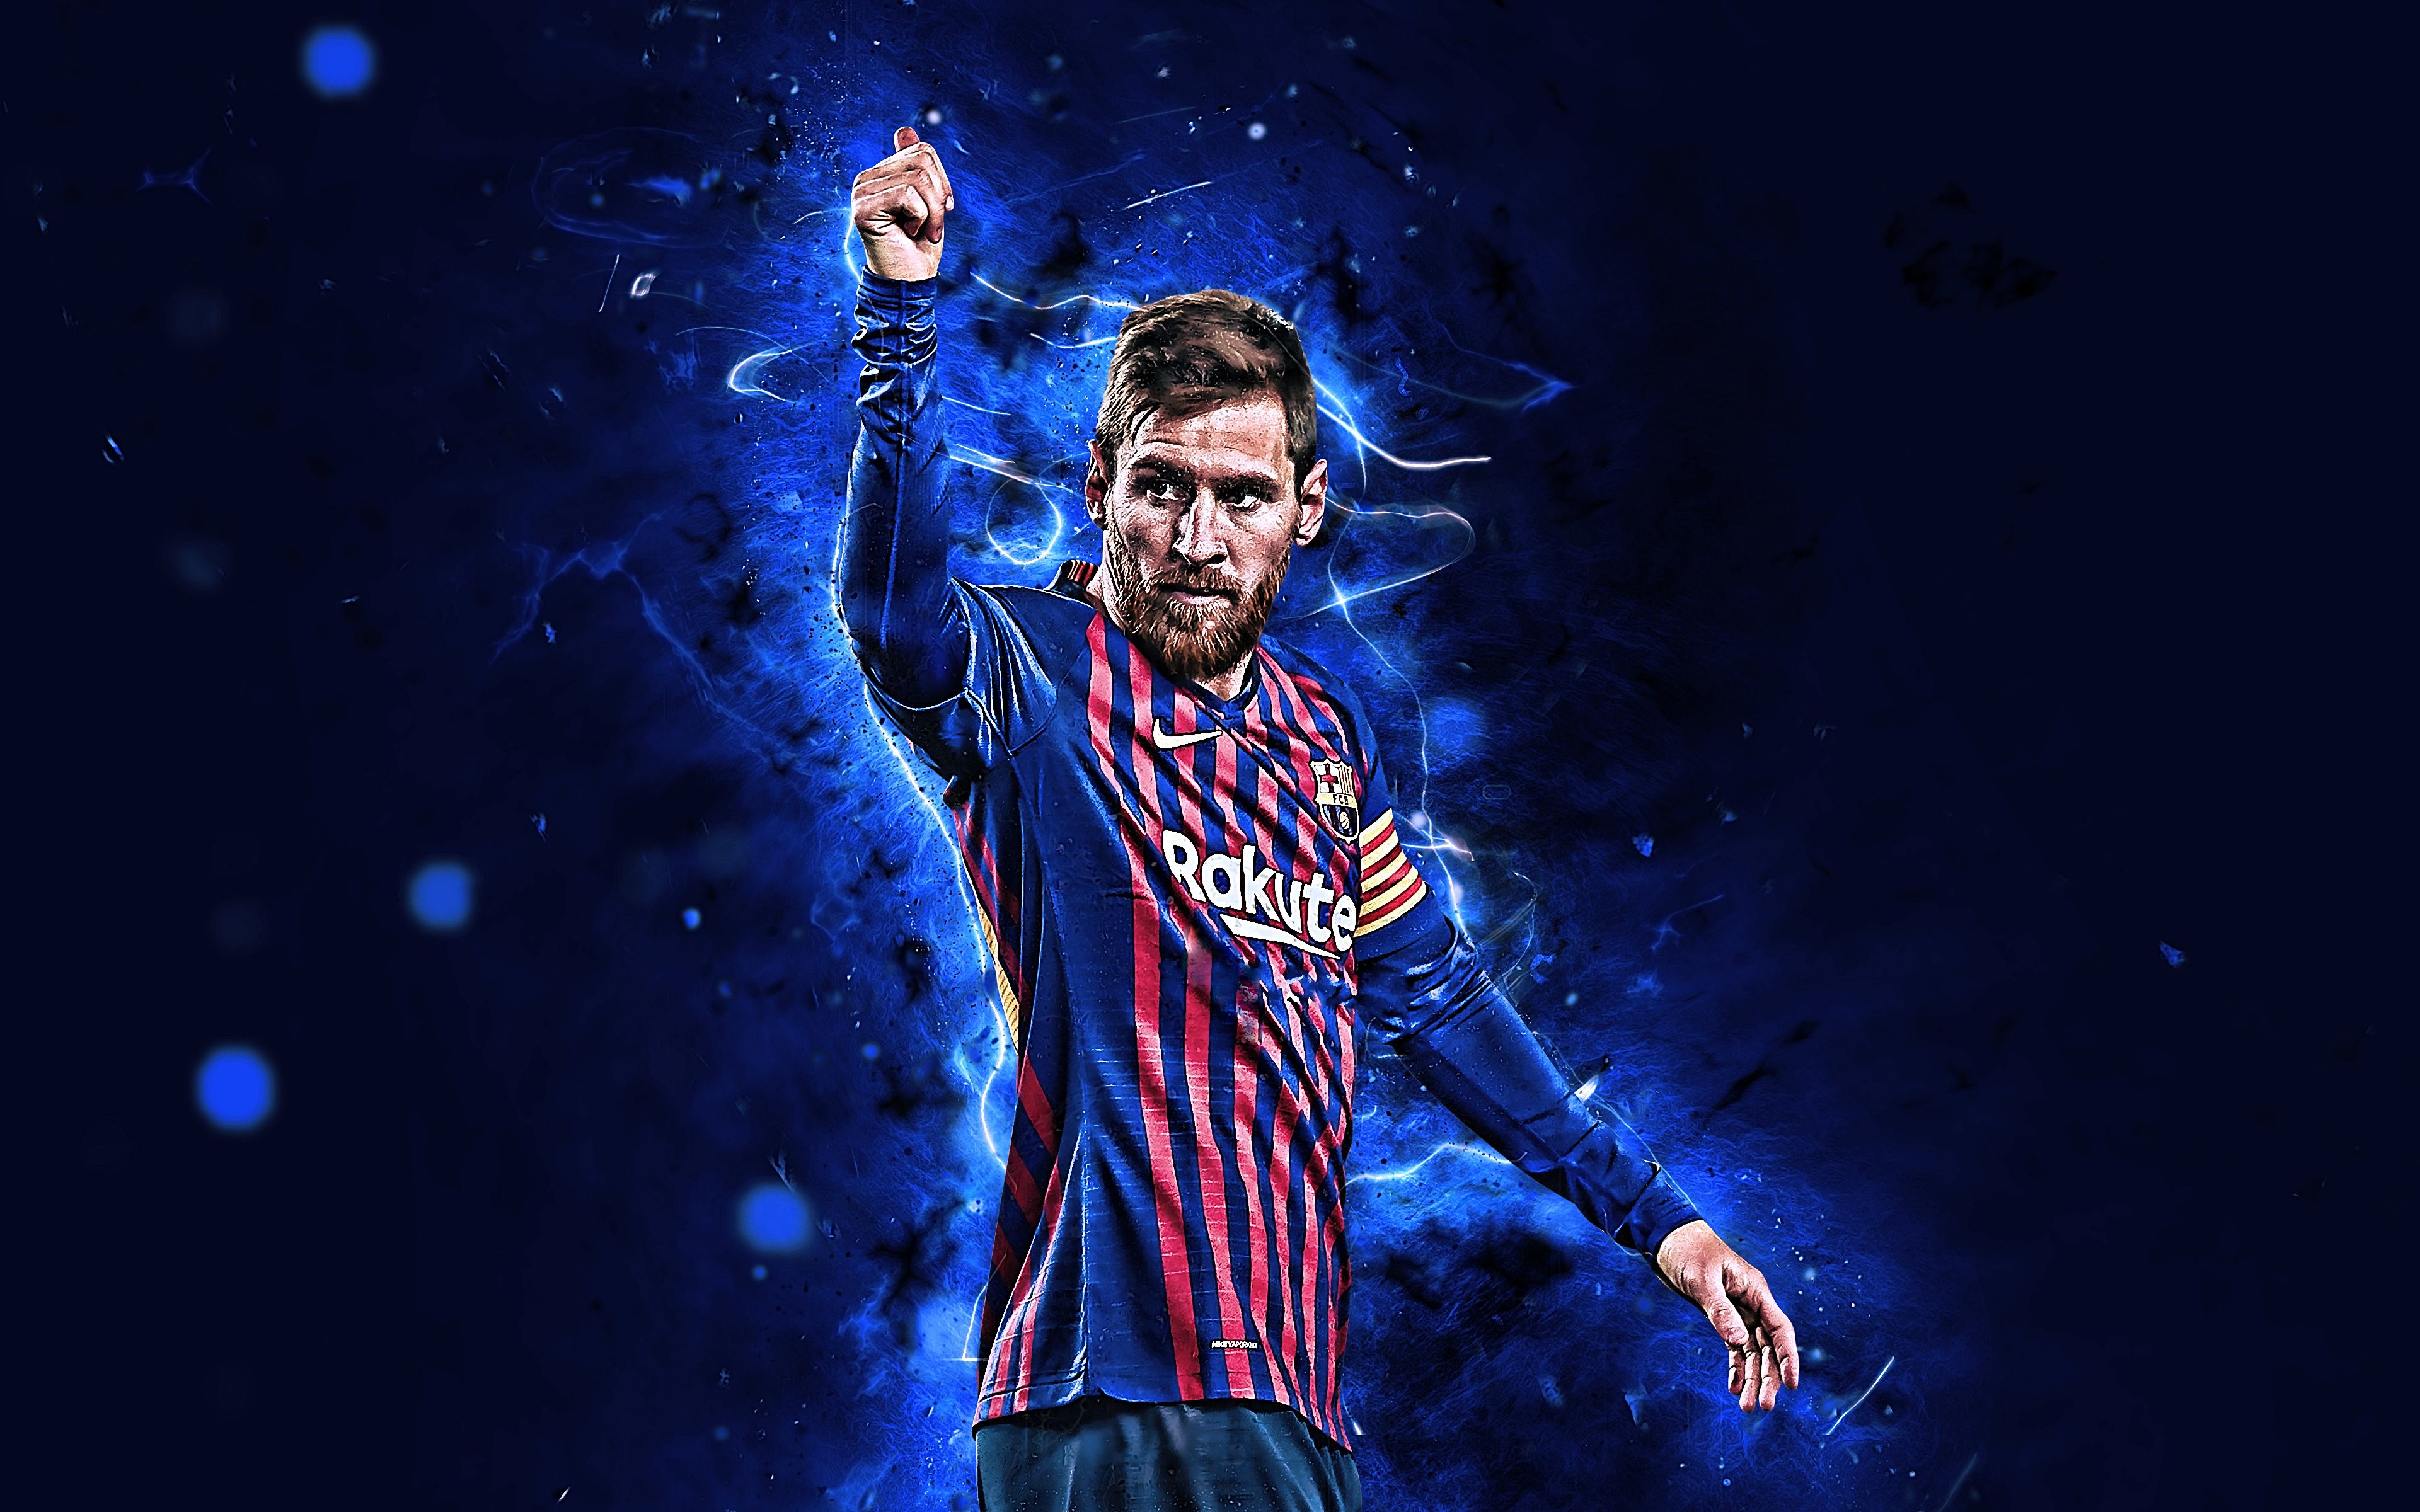 Bộ sưu tập ảnh Messi 4K chứa đựng những khoảnh khắc đáng nhớ nhất trong sự nghiệp của Messi. Được chọn lọc kỹ càng từ những tấm ảnh chất lượng nhất, bộ sưu tập này sẽ đem lại cho bạn những trải nghiệm thật sự tuyệt vời. Hãy cùng thưởng thức và chia sẻ niềm đam mê bóng đá cùng bộ sưu tập ảnh Messi 4k.